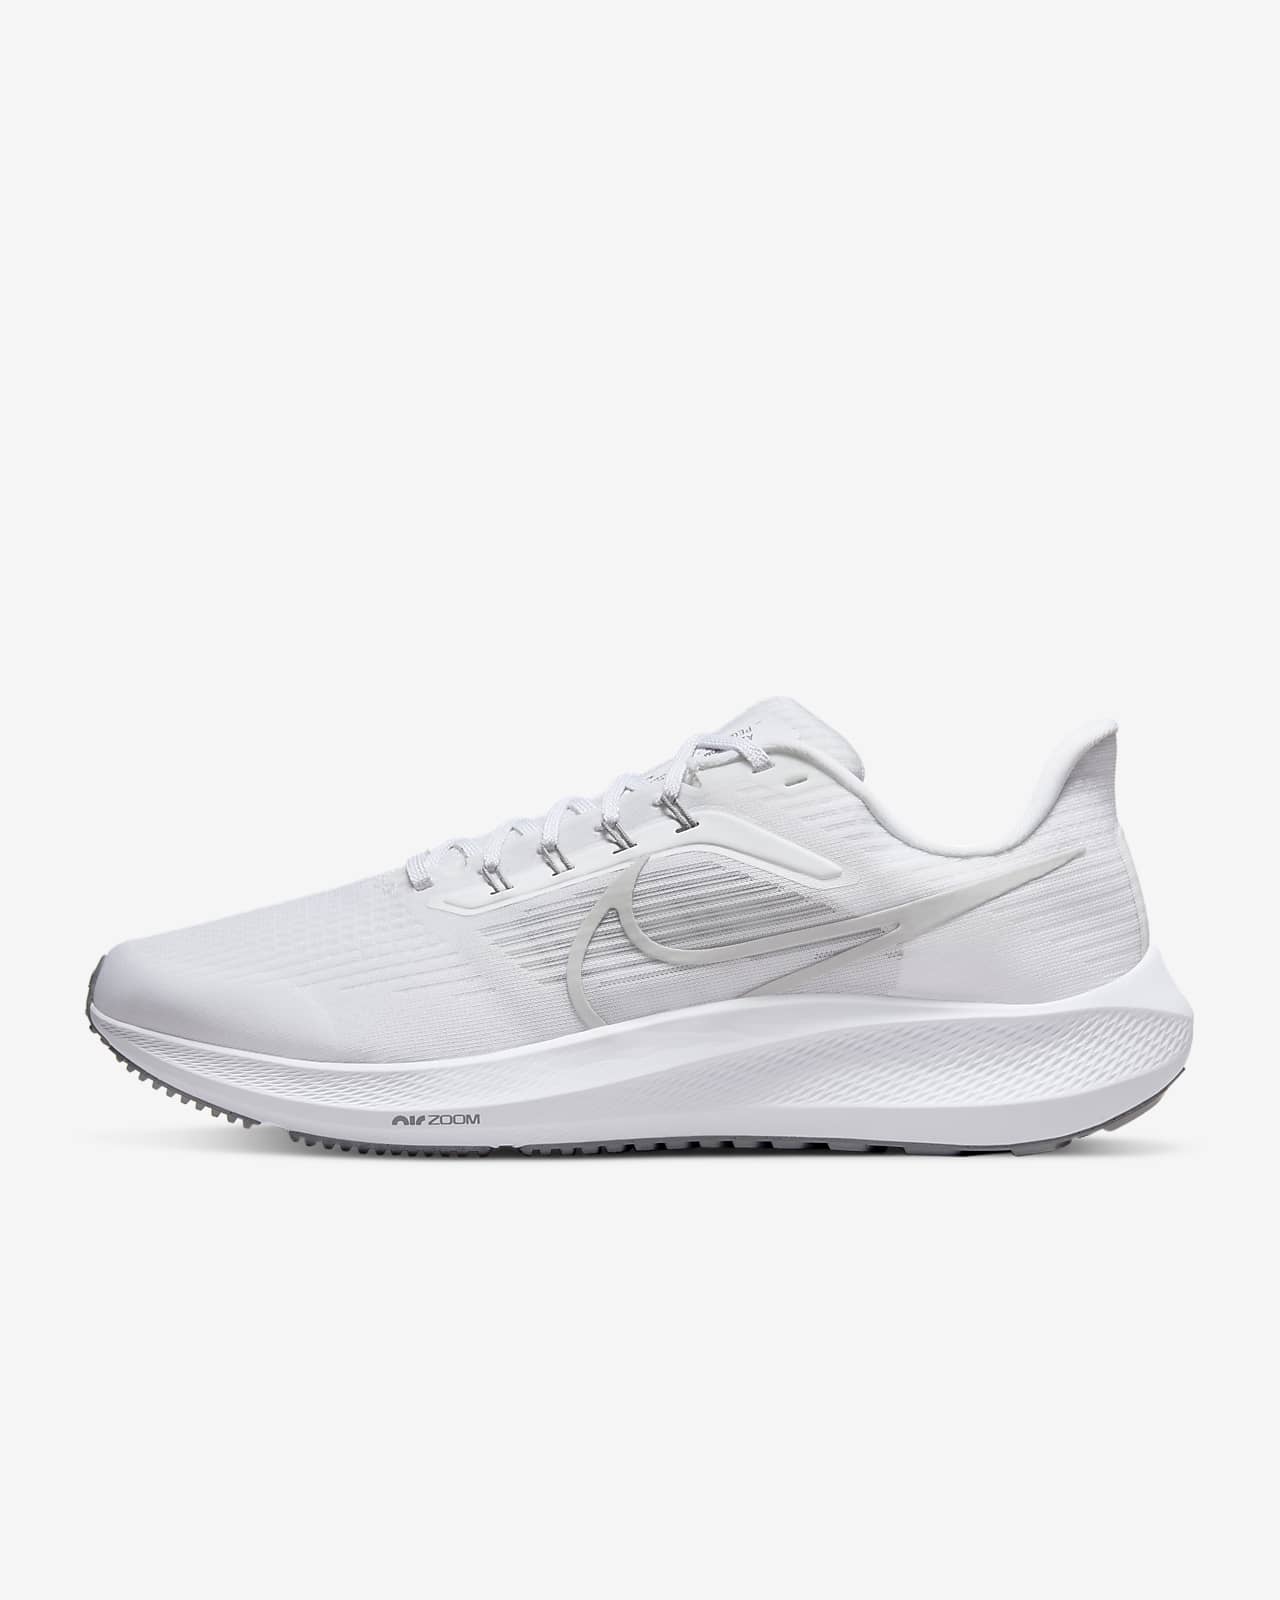 Ανδρικά παπούτσια για τρέξιμο σε δρόμο Nike Air Zoom Pegasus 39